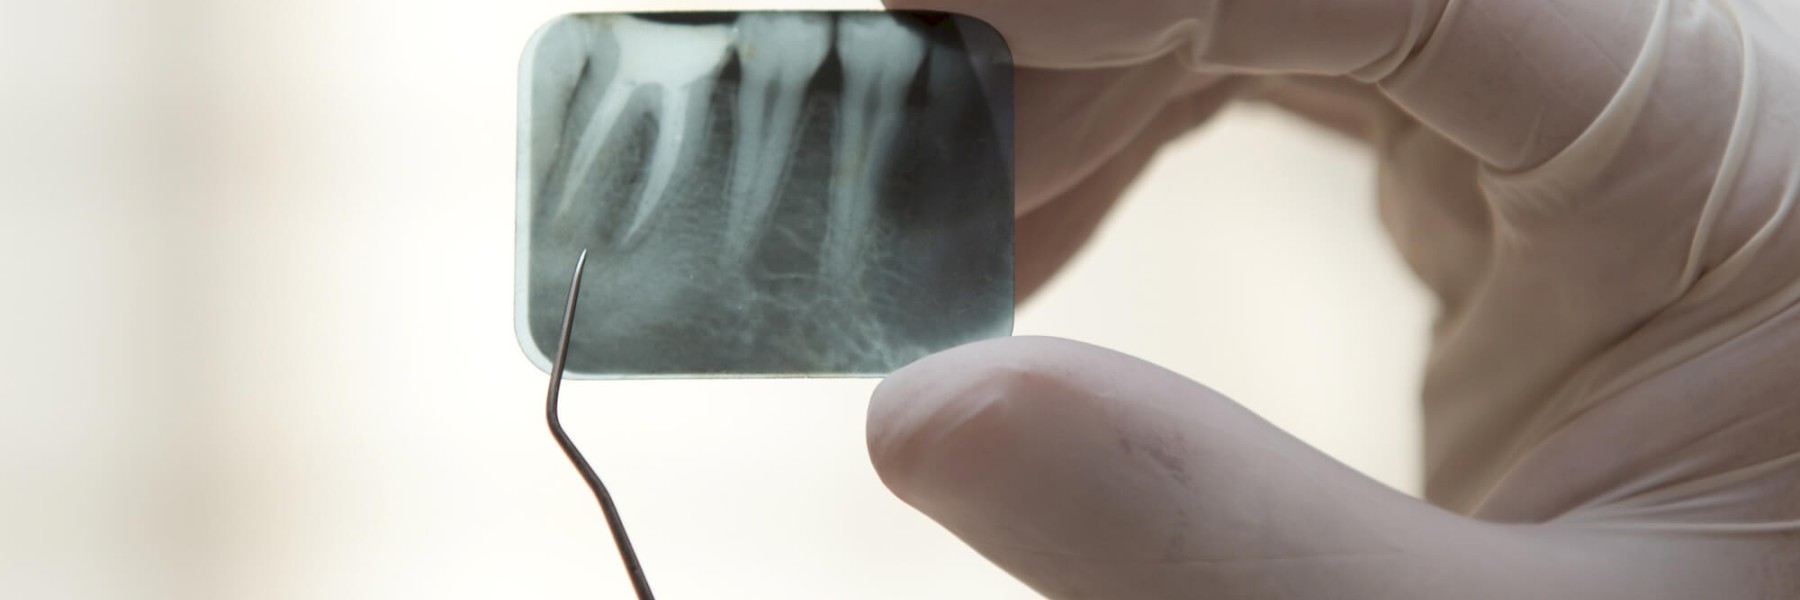 endodonzia-endodontista-viadana-studio-dentisti